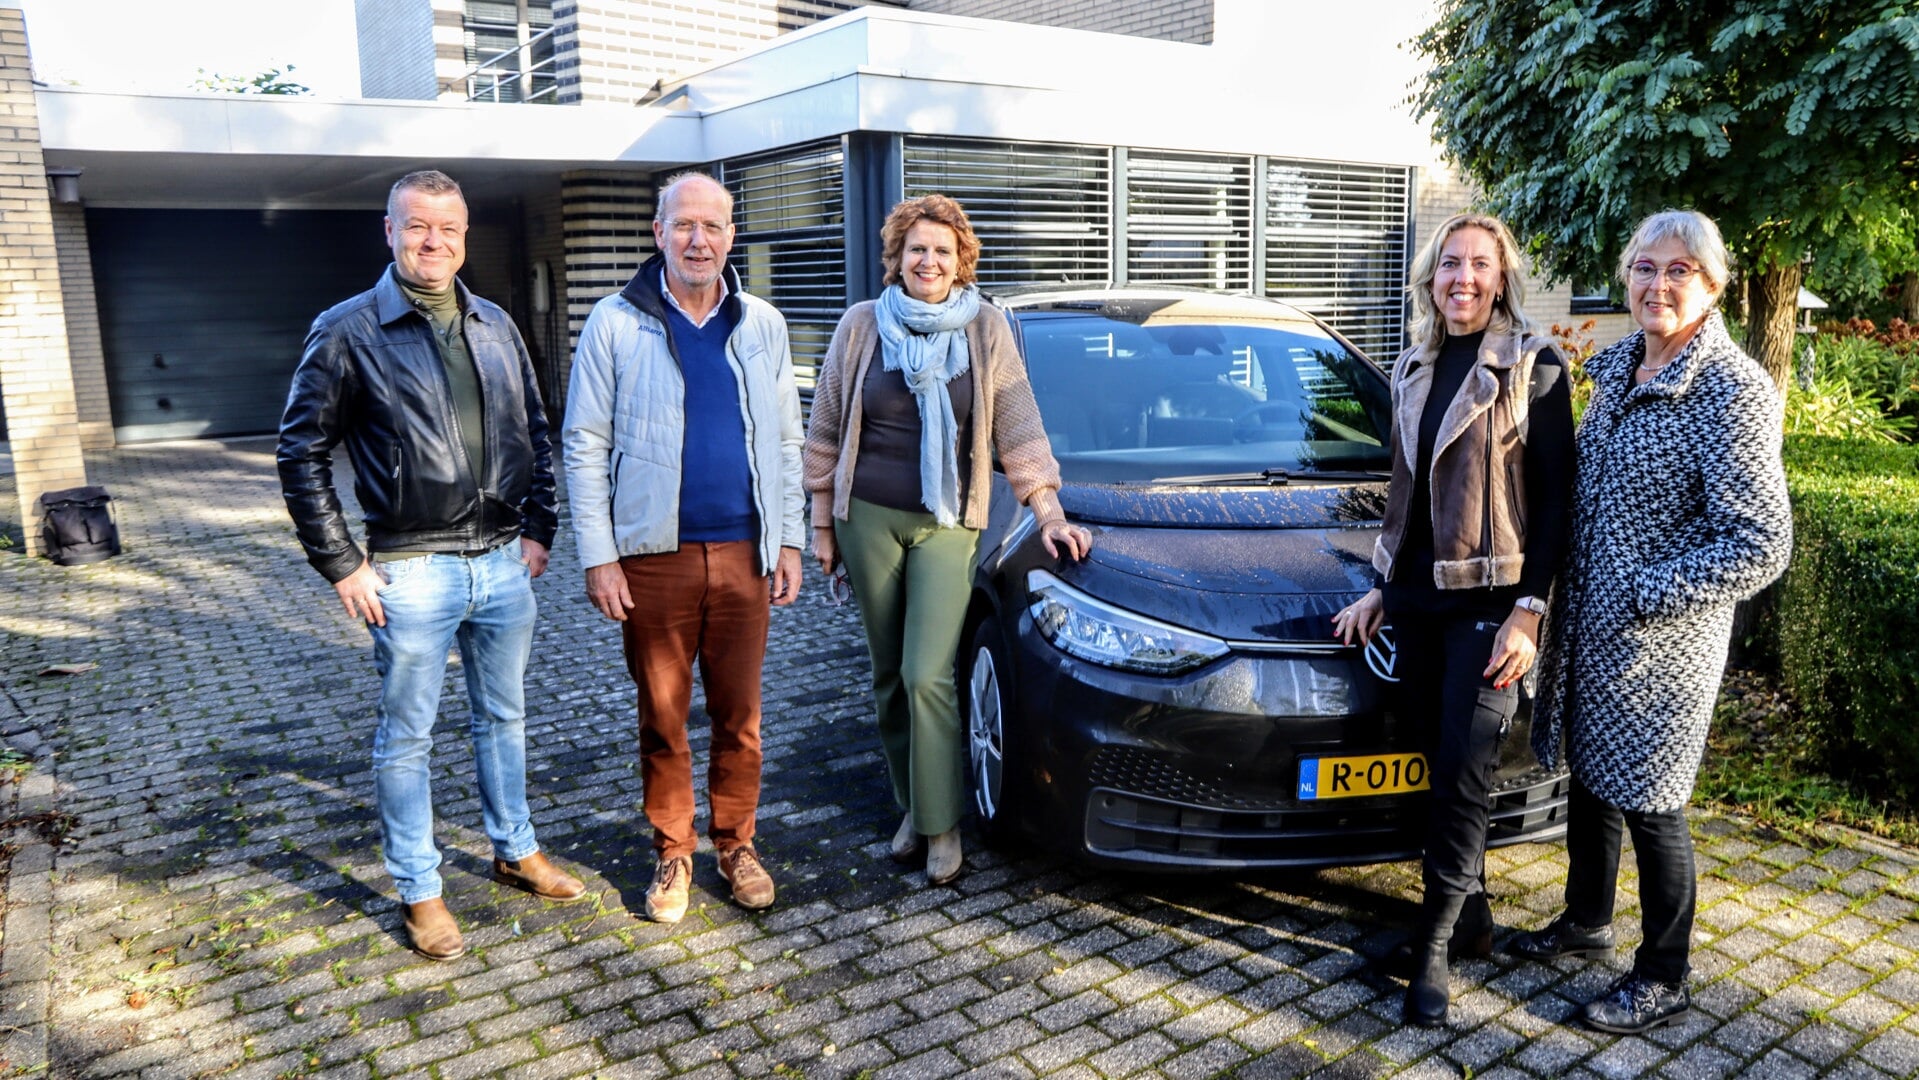 In de Wilgen startte deze week een nieuw deelautoproject. Op de foto de deelnemers van links naar rechts: Serge Smit, Jan Stelwagen, Hilda Wiersma-De Haan, Jacqueline Tamminga, en Hinke Stelwagen. Jaap en Anna Heideveld ontbreken op de foto.